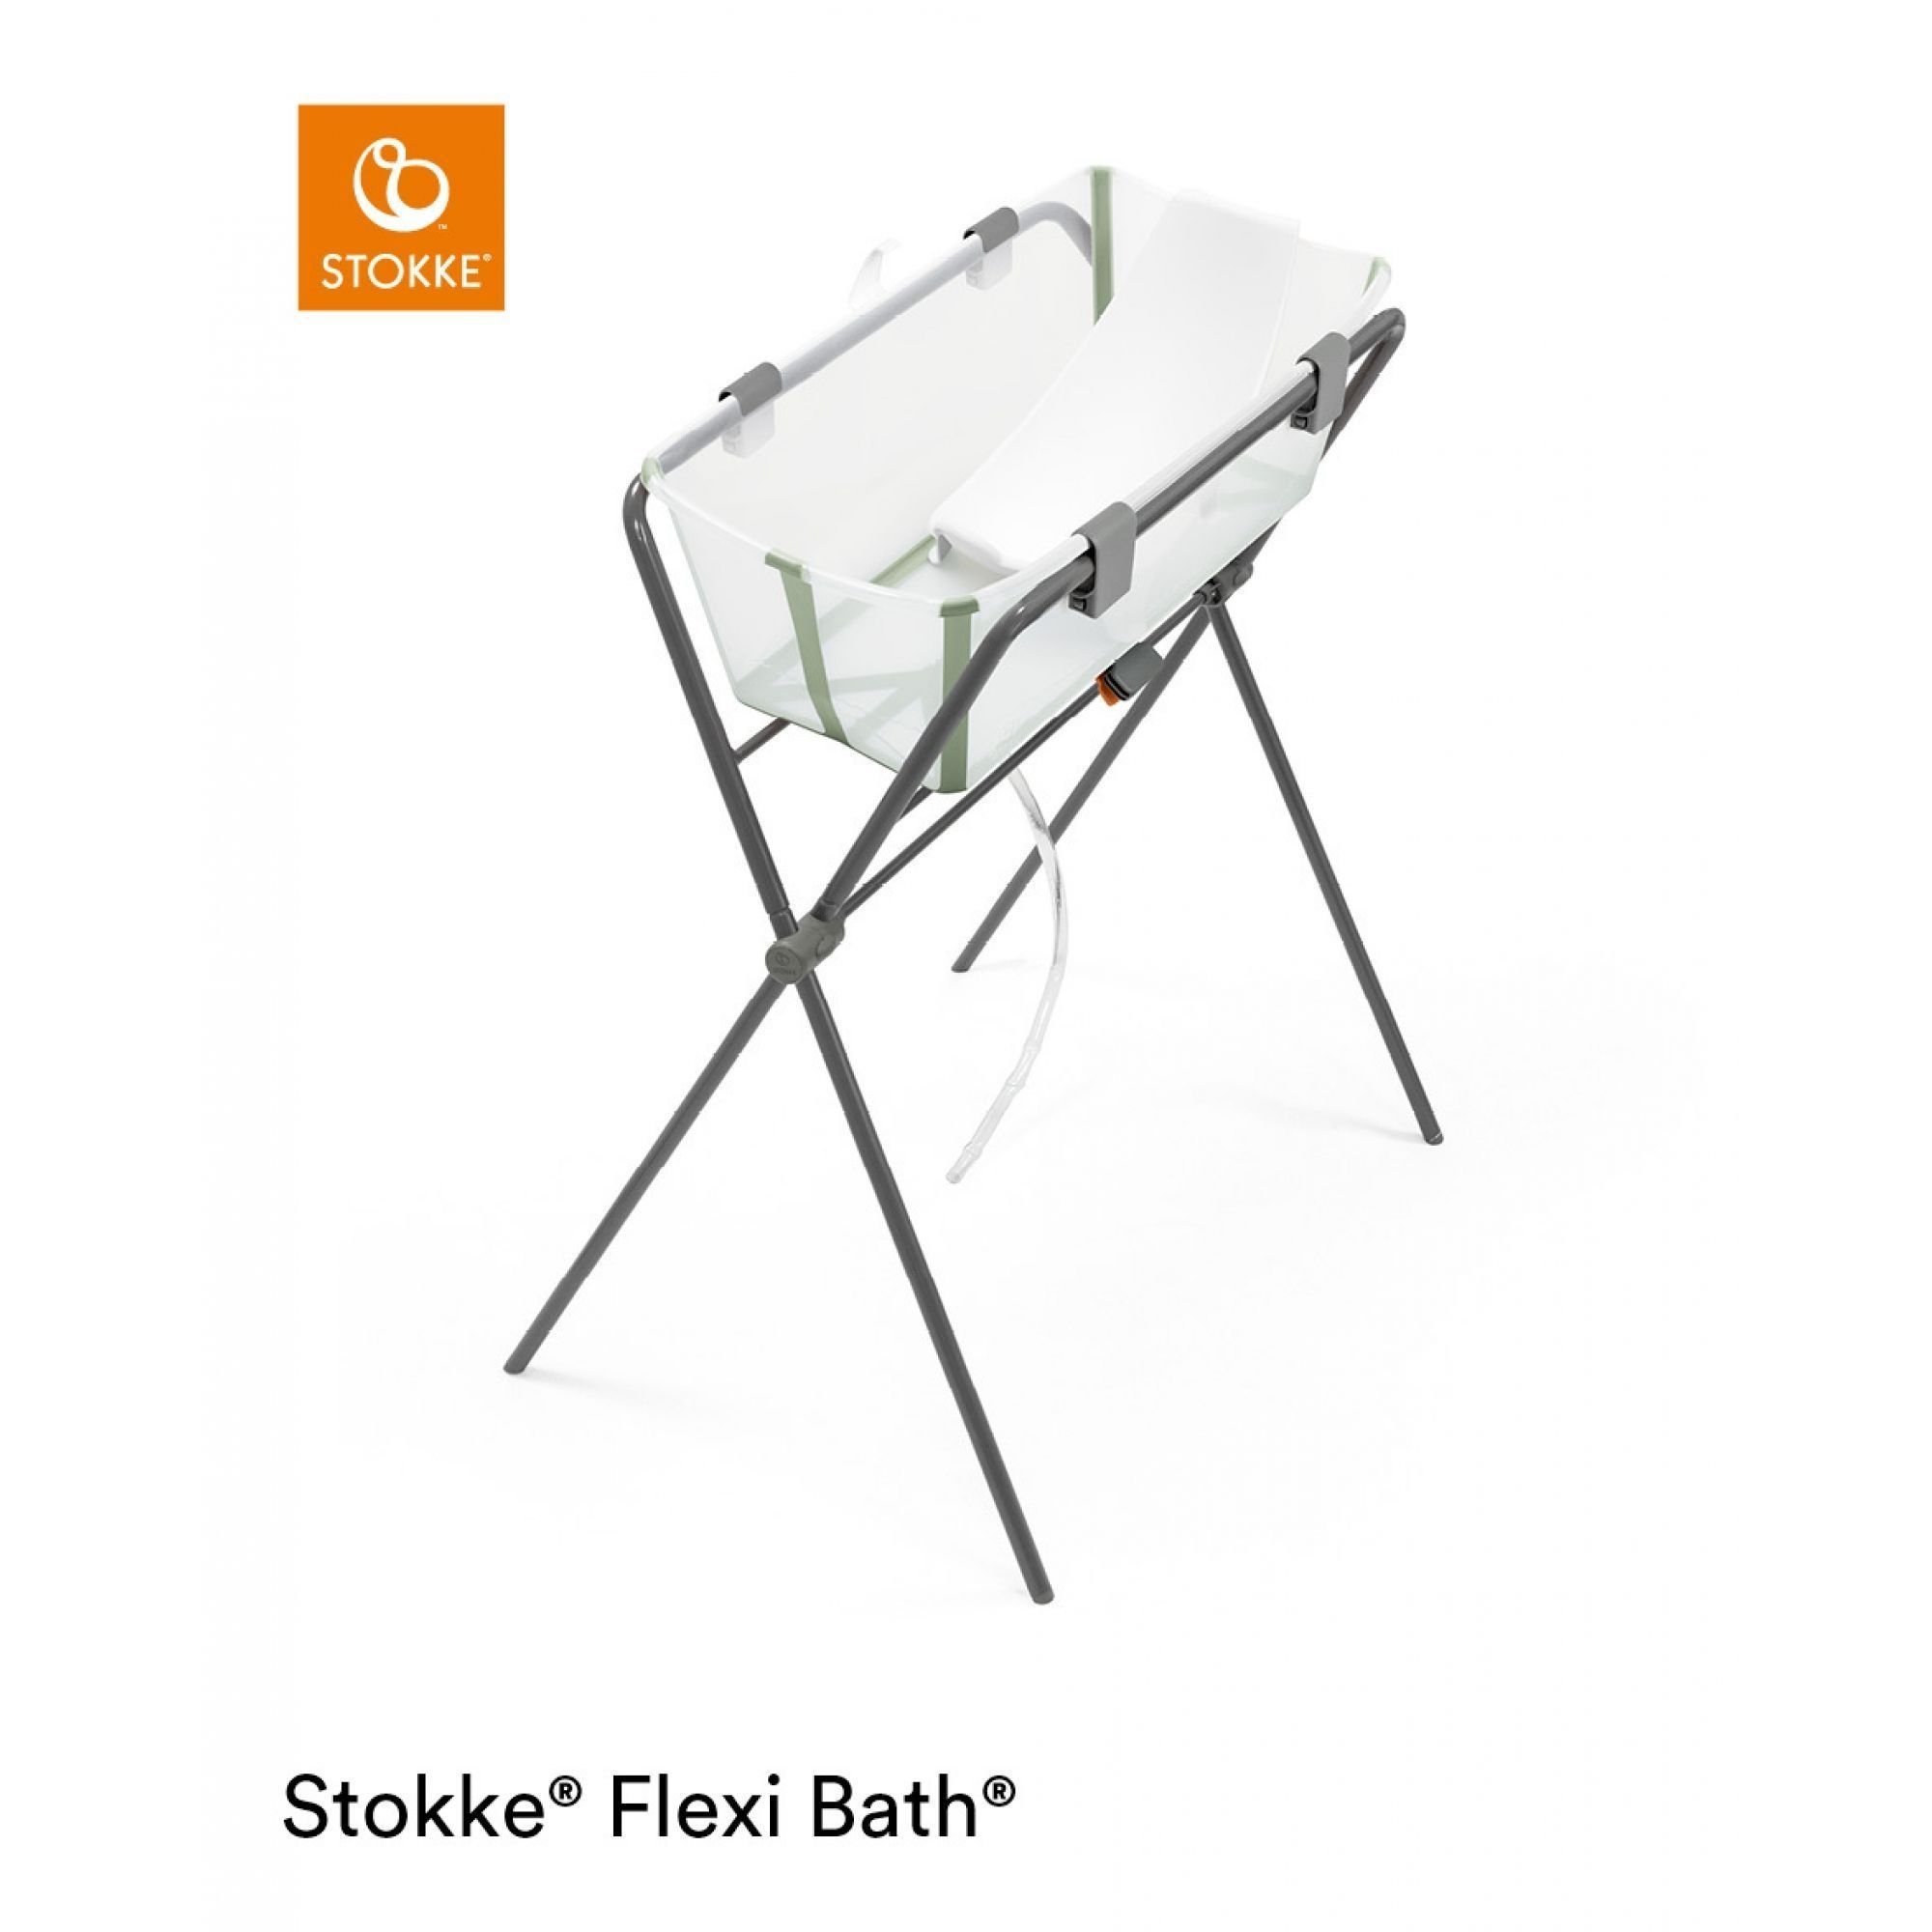 Stokke Flexi Bath baignoire pour nouveau-né économiseur d'eau Stokke  motif/coloris Transparent Vert Stokke Taille/bundle Baignoire X-Large